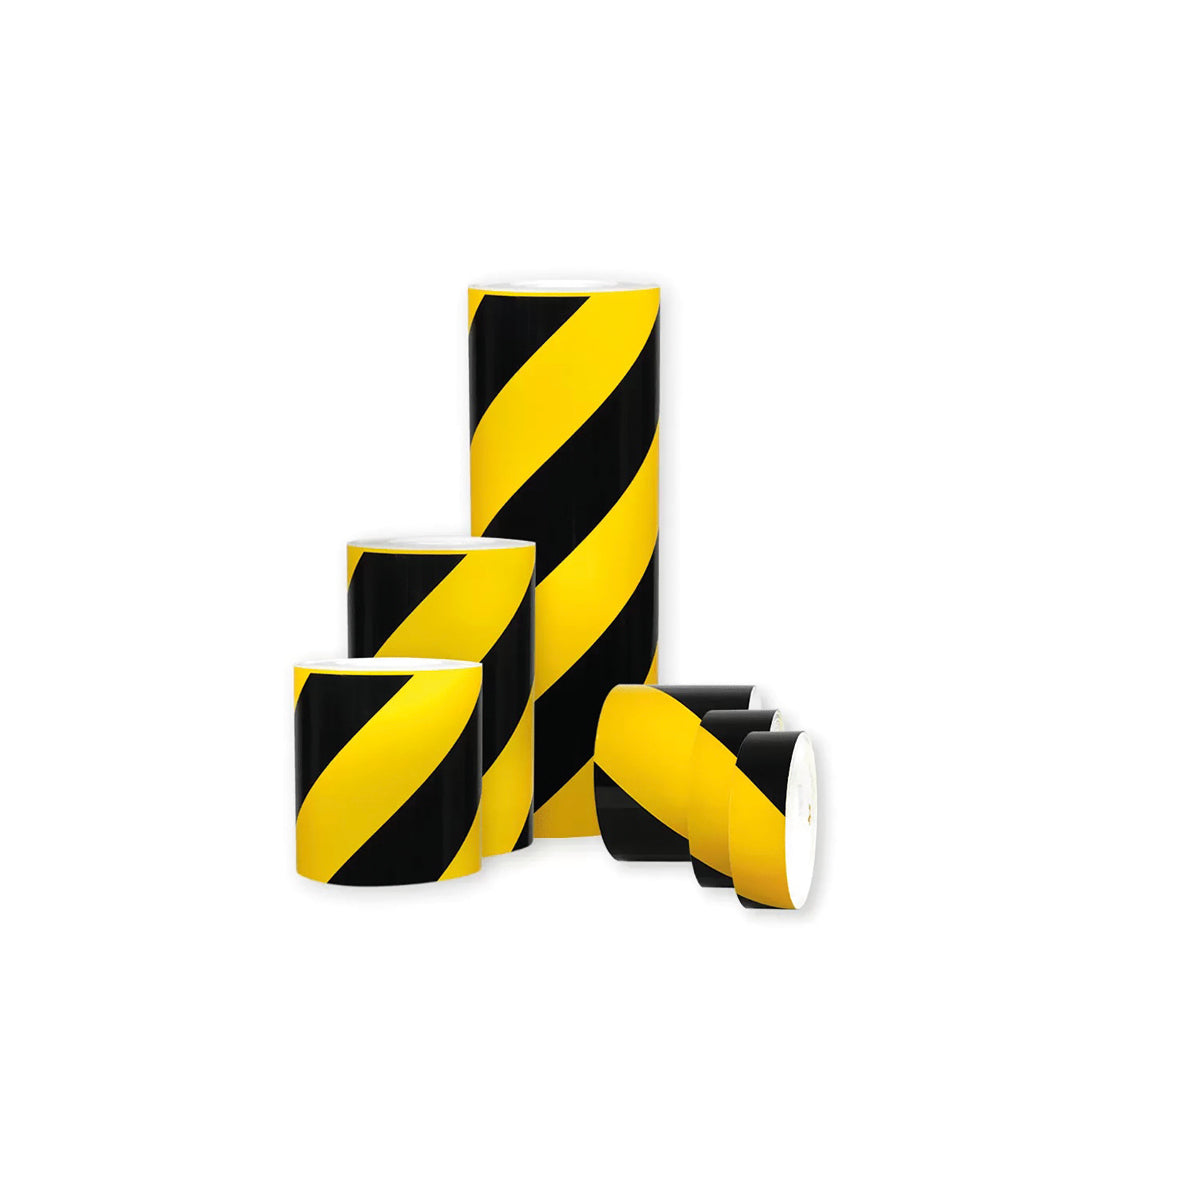 Warnmarkierungsband R1, für Fahrzeuge, R1, gelb-schwarz, 10 m x 200 mm, linksweisend